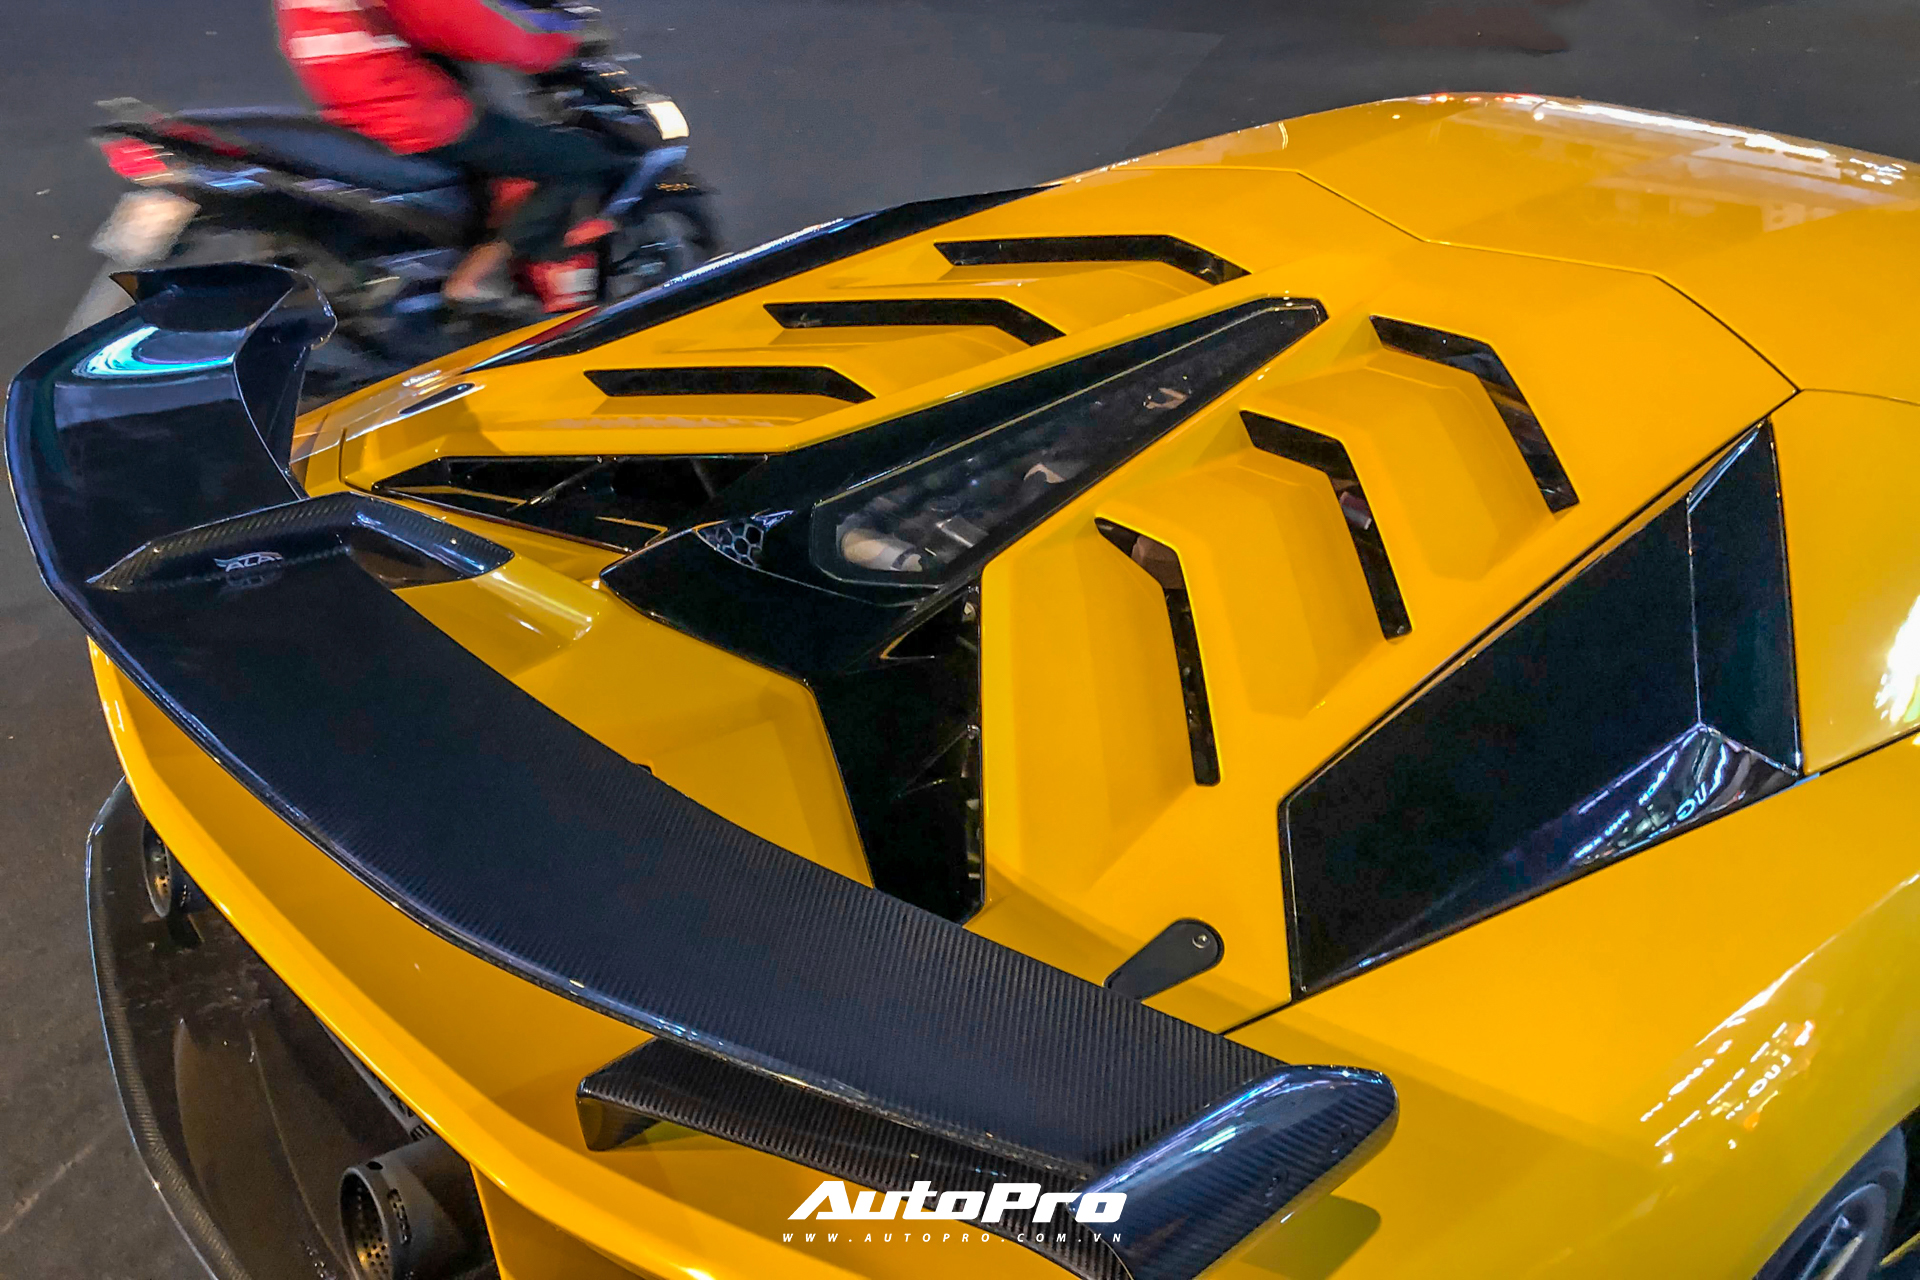 Cận cảnh Lamborghini Aventador SVJ thứ 2 tại Việt Nam: Nhiều chi tiết là điểm nhấn tạo nên sự khác biệt - Ảnh 9.